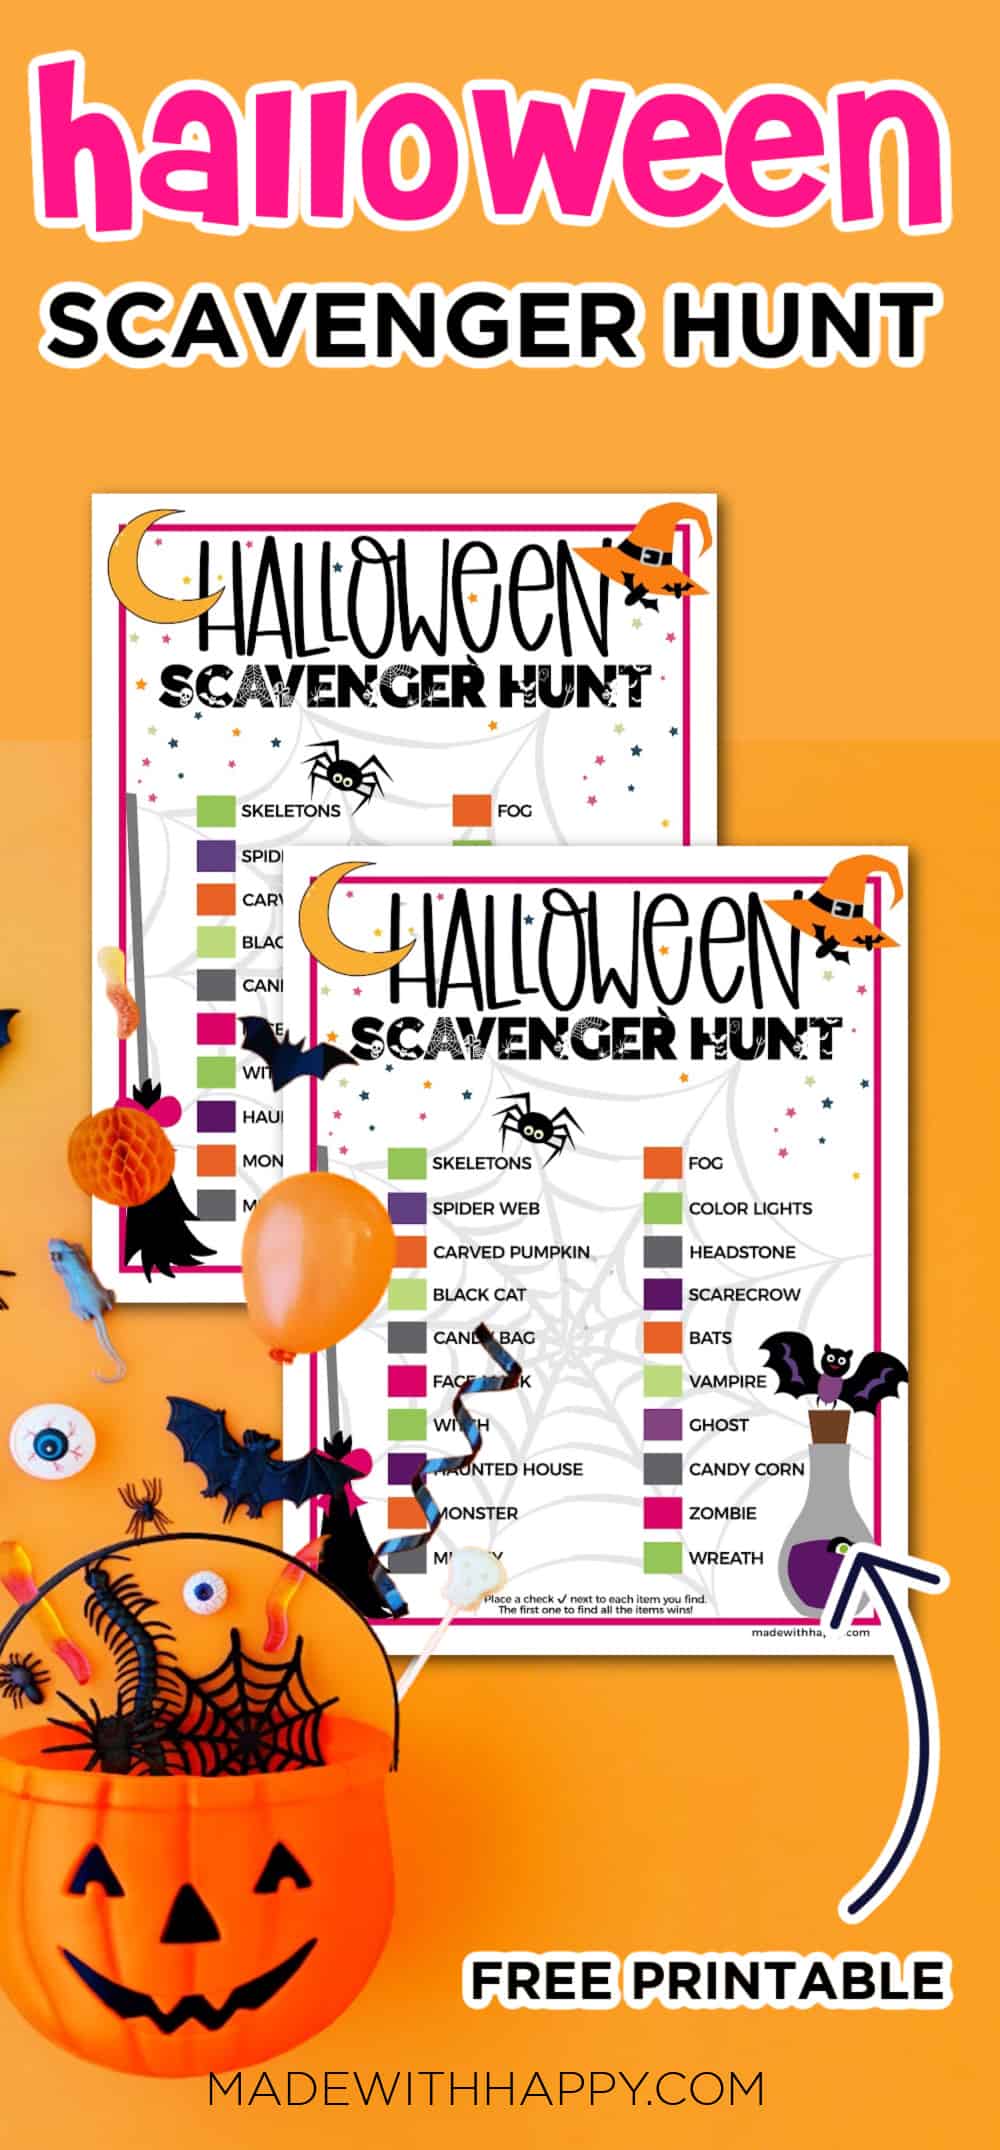 scavenger hunt ideas for Halloween